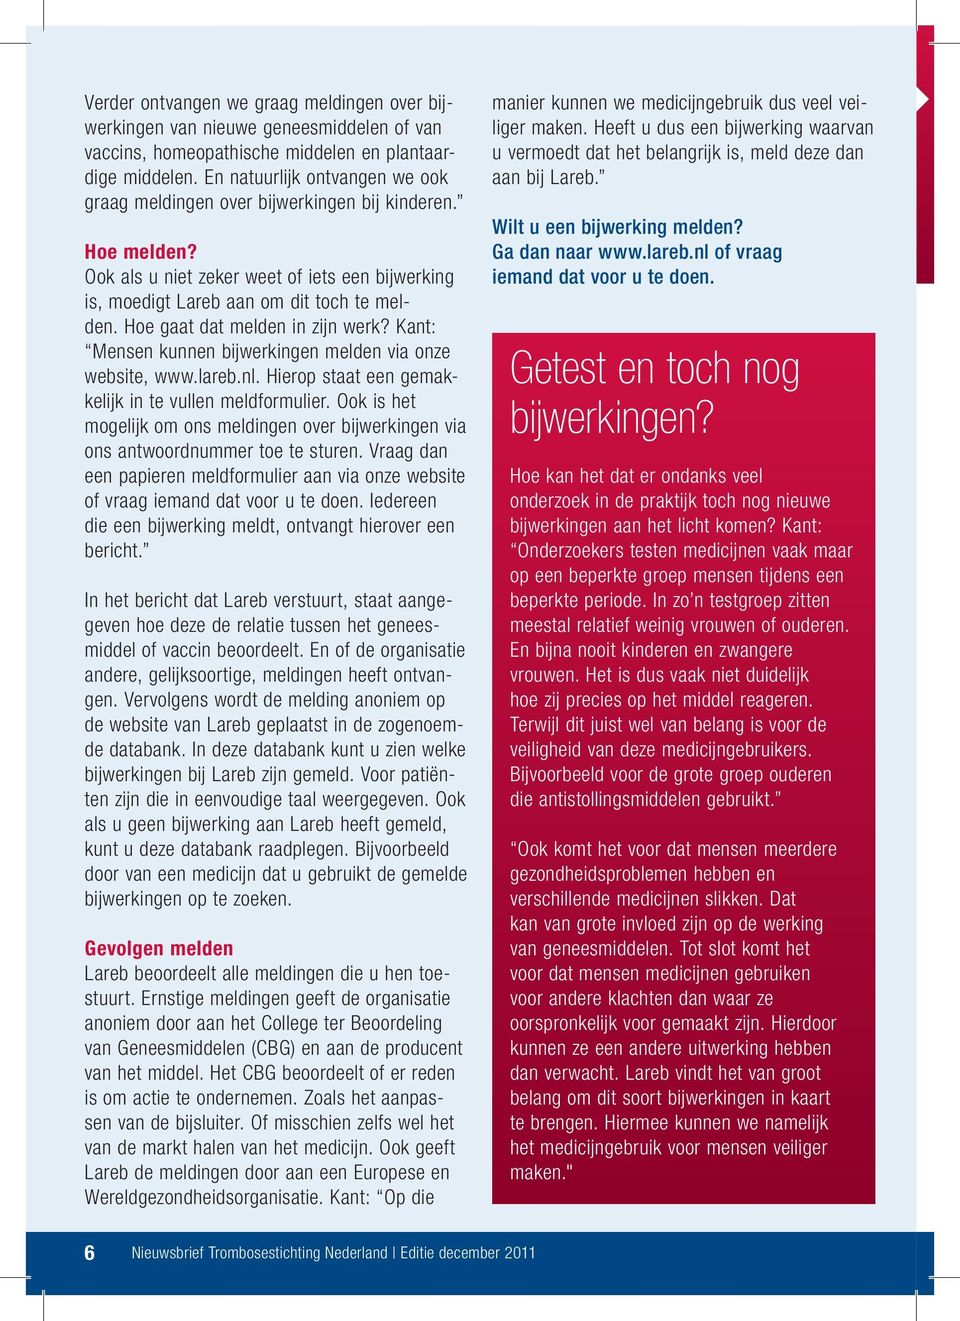 Hoe gaat dat melden in zijn werk? Kant: Mensen kunnen bijwerkingen melden via onze website, www.lareb.nl. Hierop staat een gemakkelijk in te vullen meldformulier.